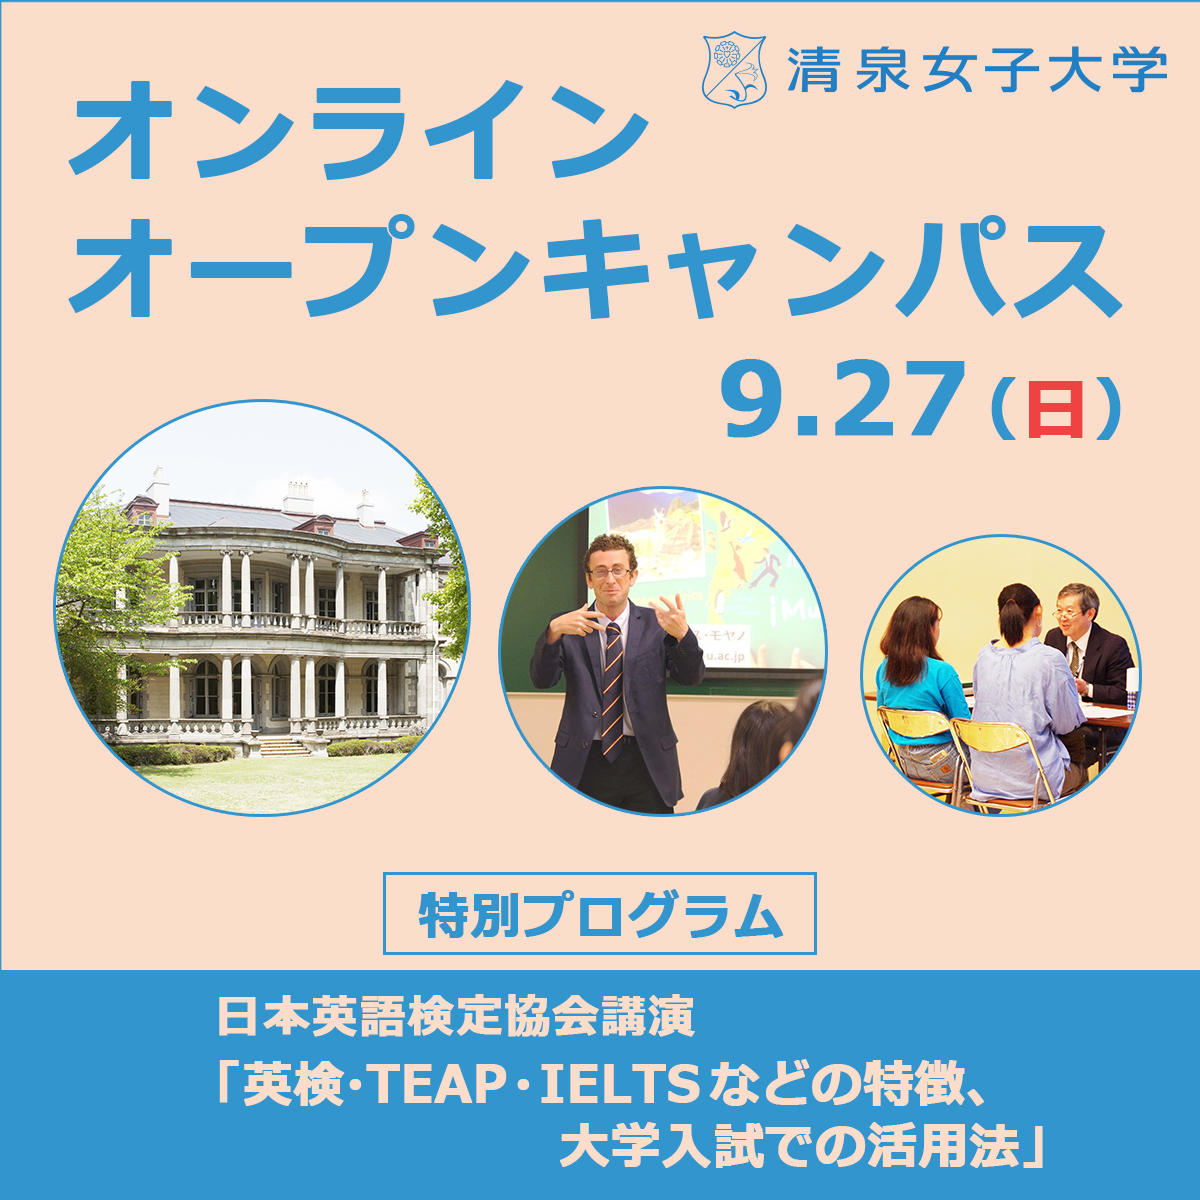 清泉女子大学が9月27日にオンライン オープンキャンパスを開催 日本英語検定協会の講演などの特別プログラムや個別相談を実施 参加者募集 大学 プレスセンター